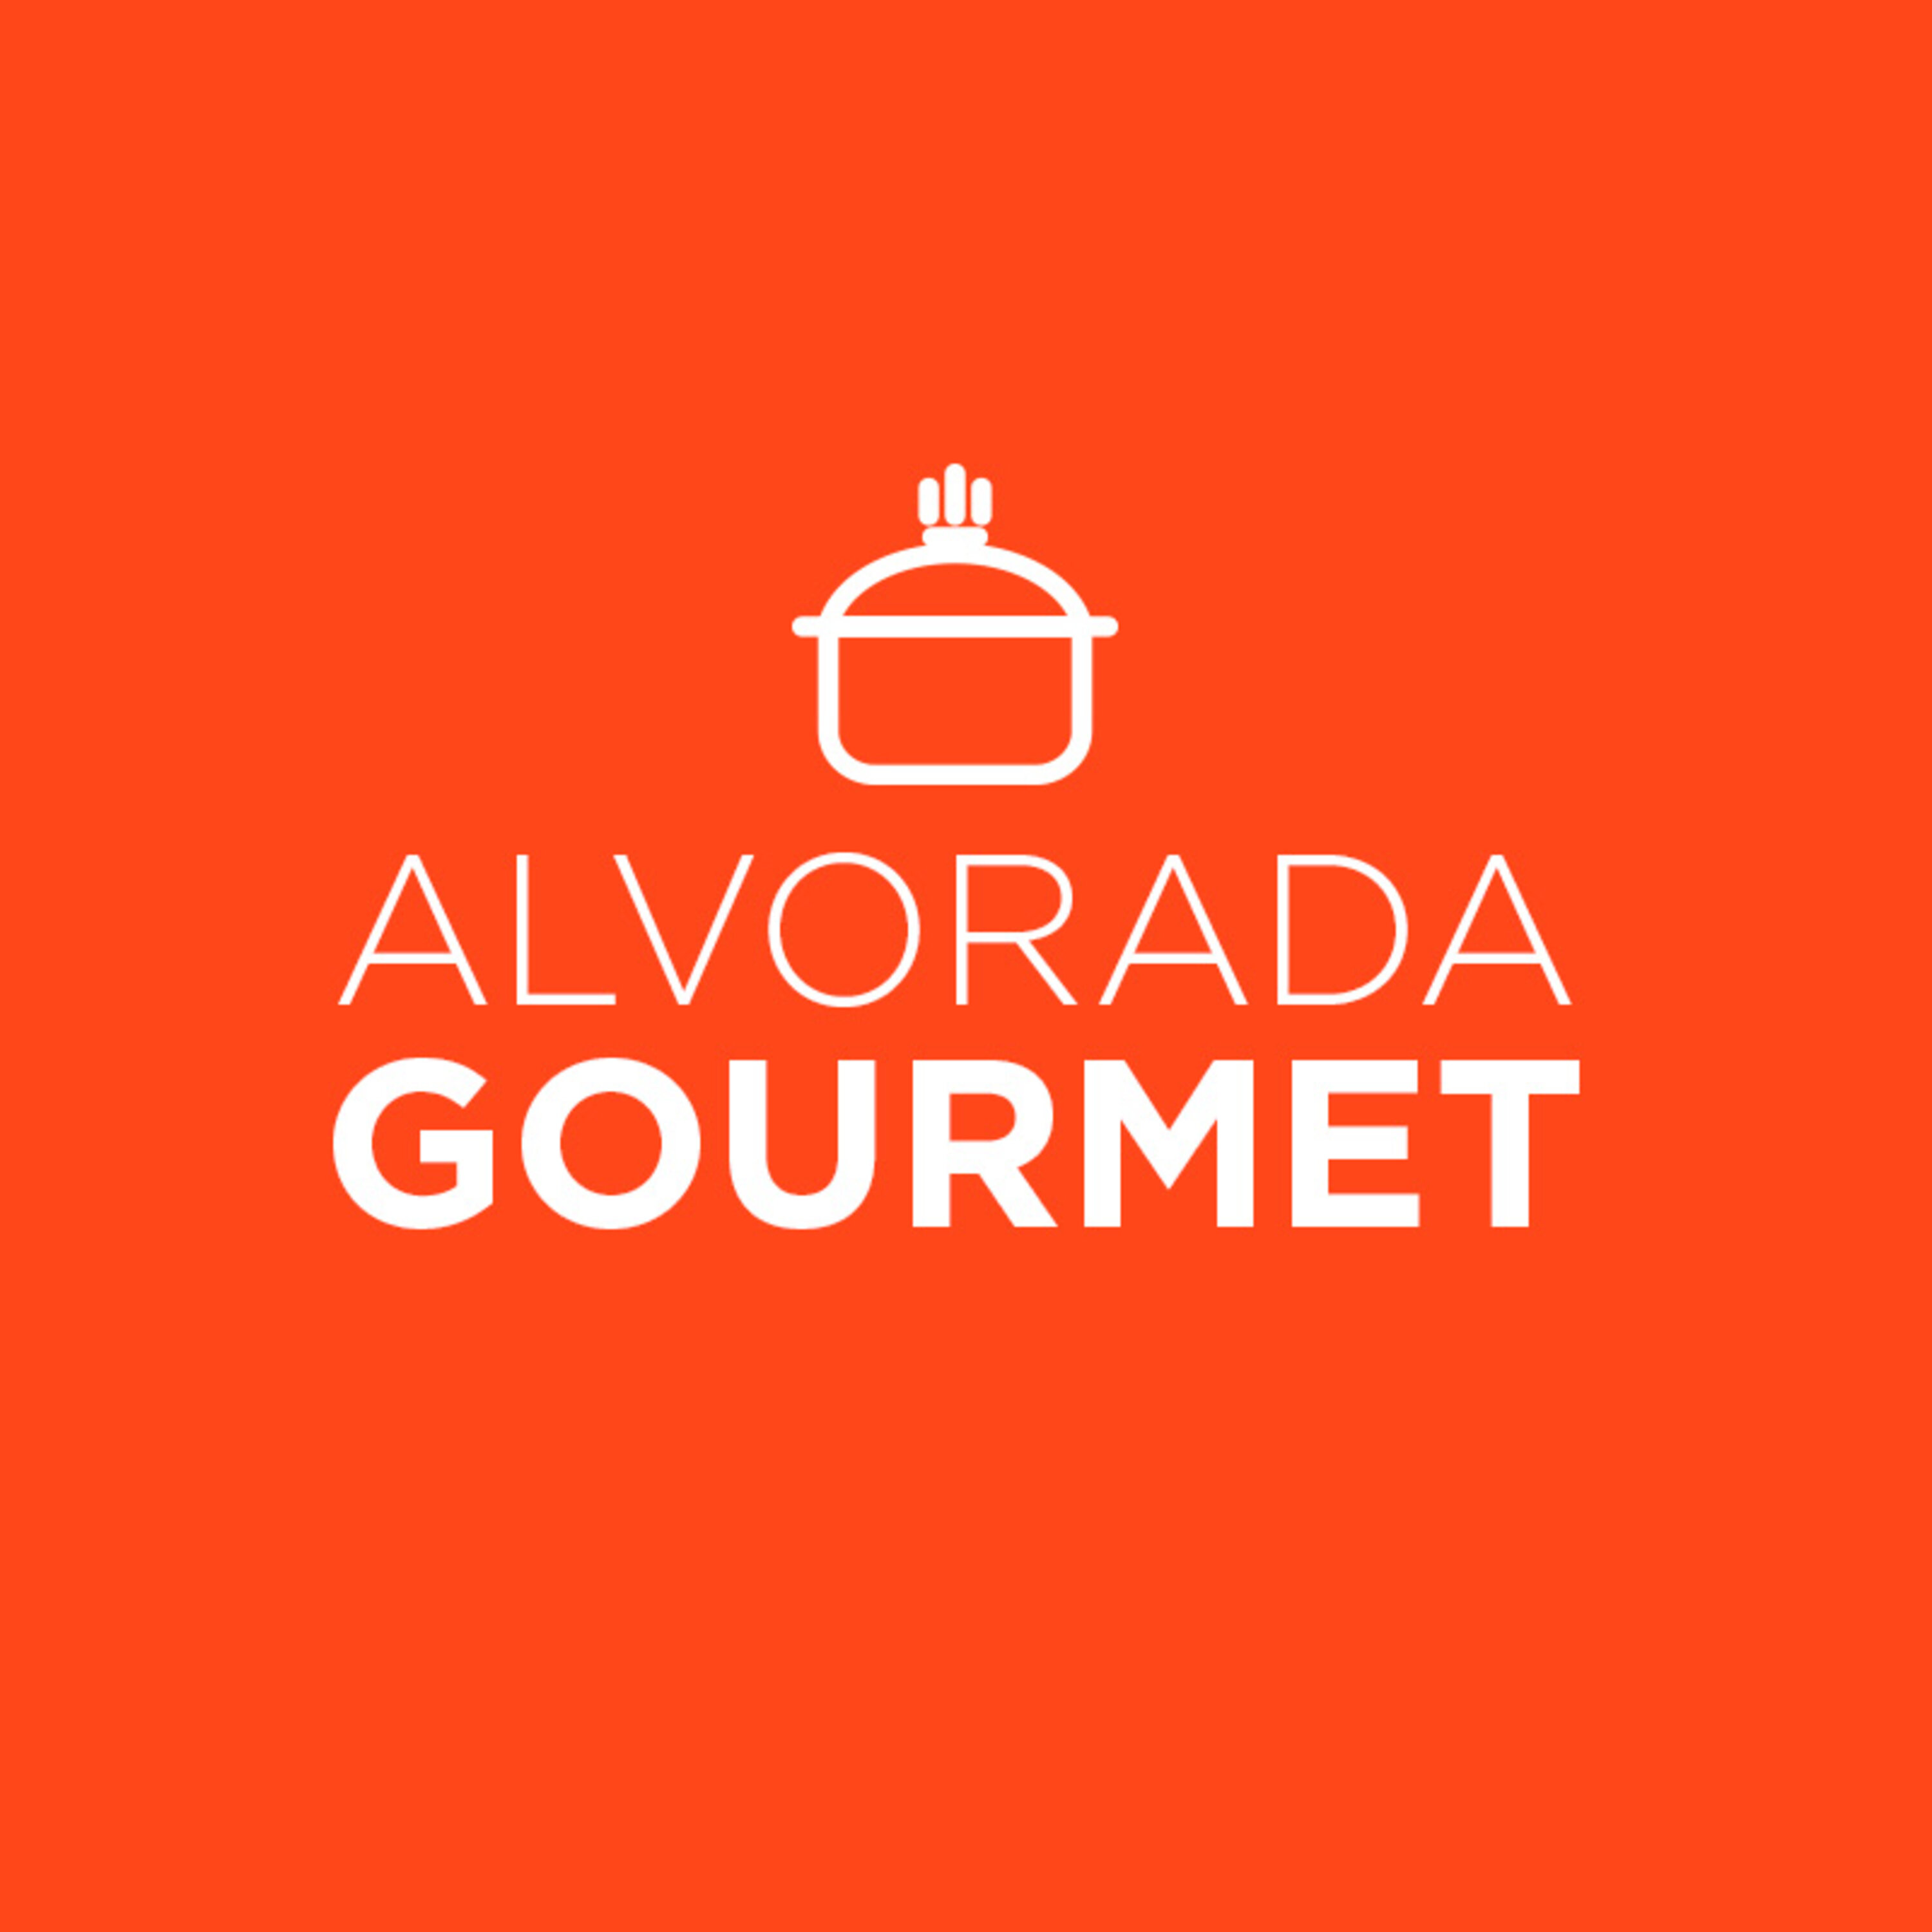 Alvorada Gourmet - Dicas de pratos simples para quem precisa cozinhas todo dia